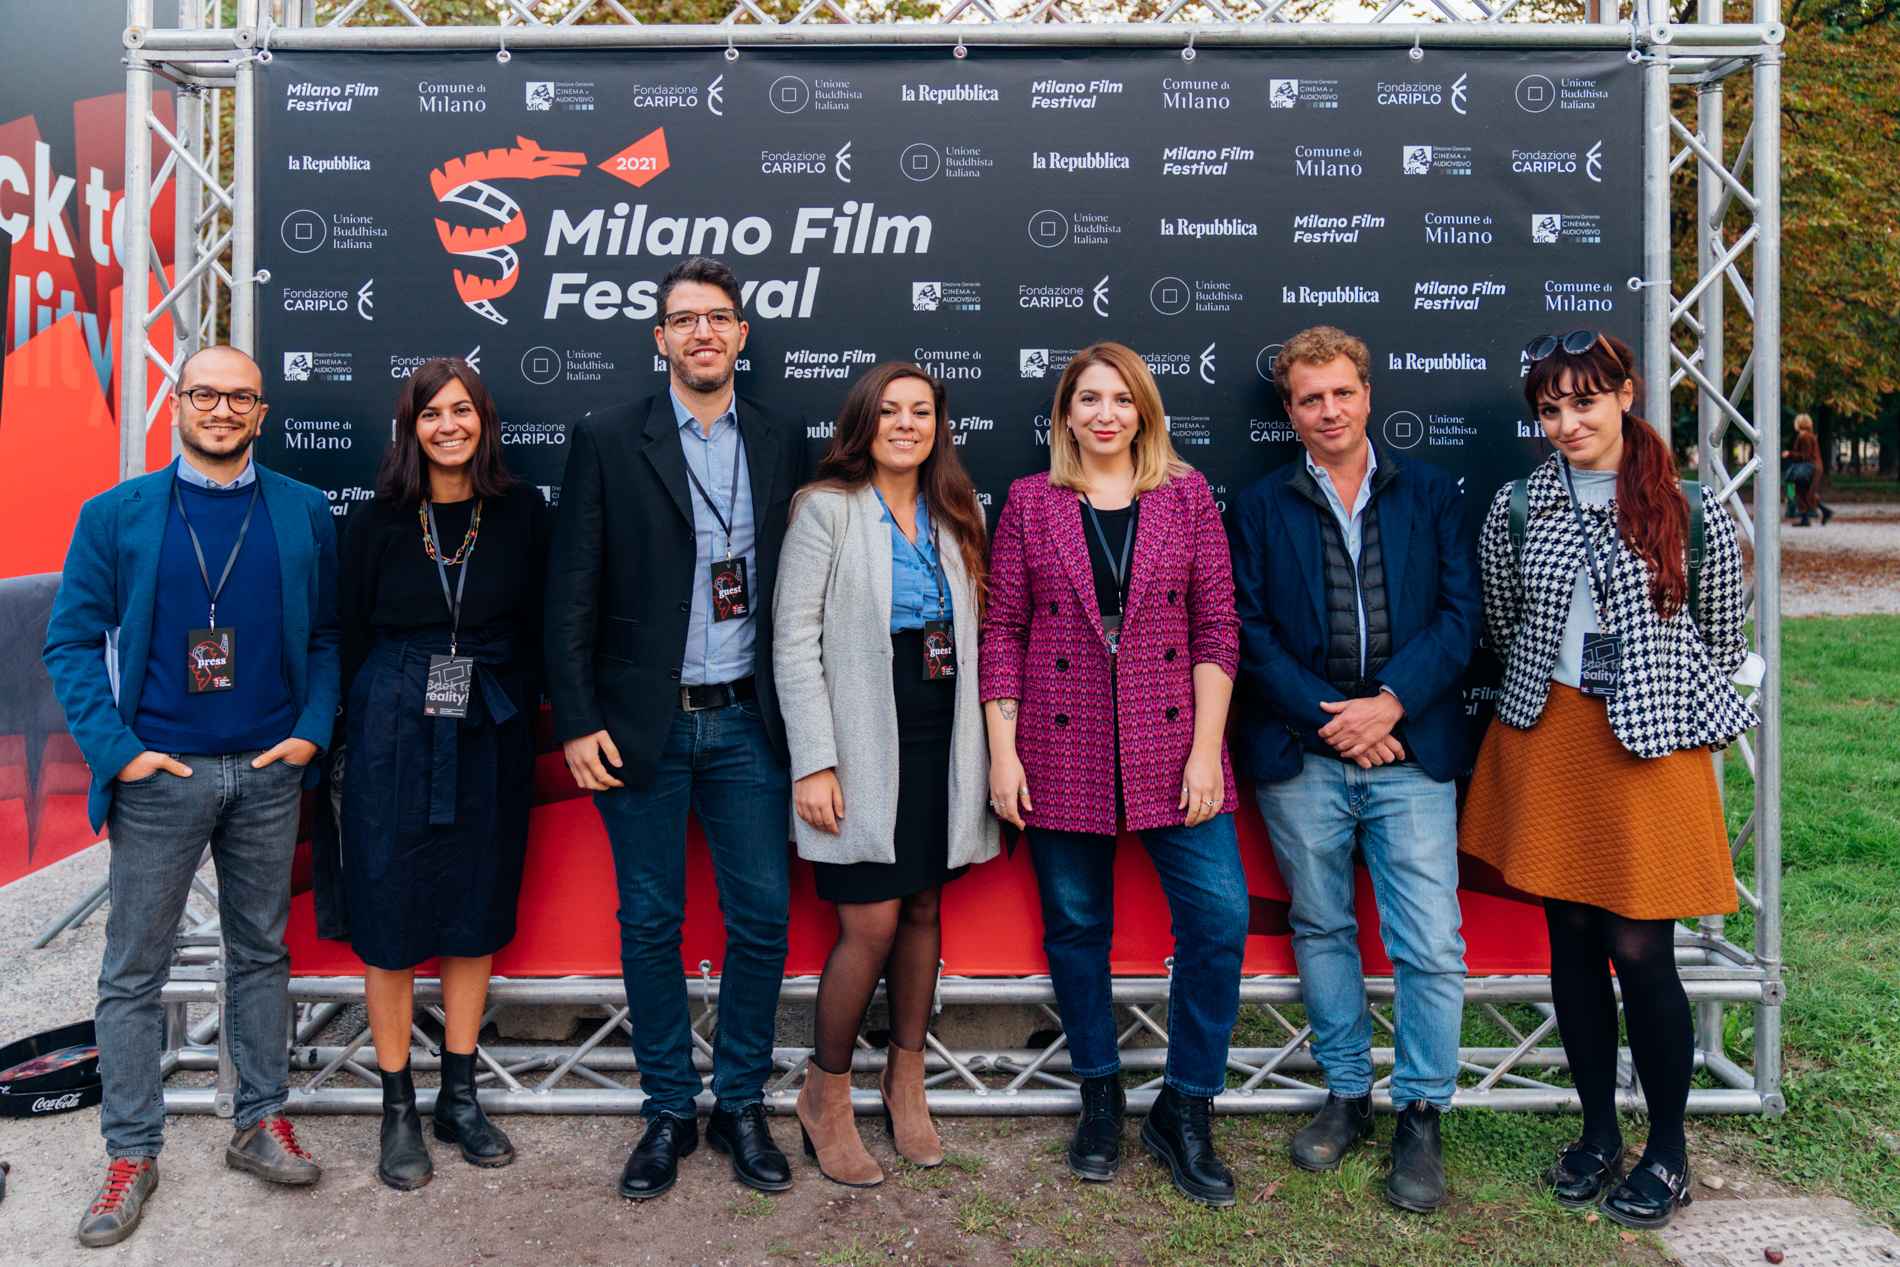 Screening at Milano Film Festival